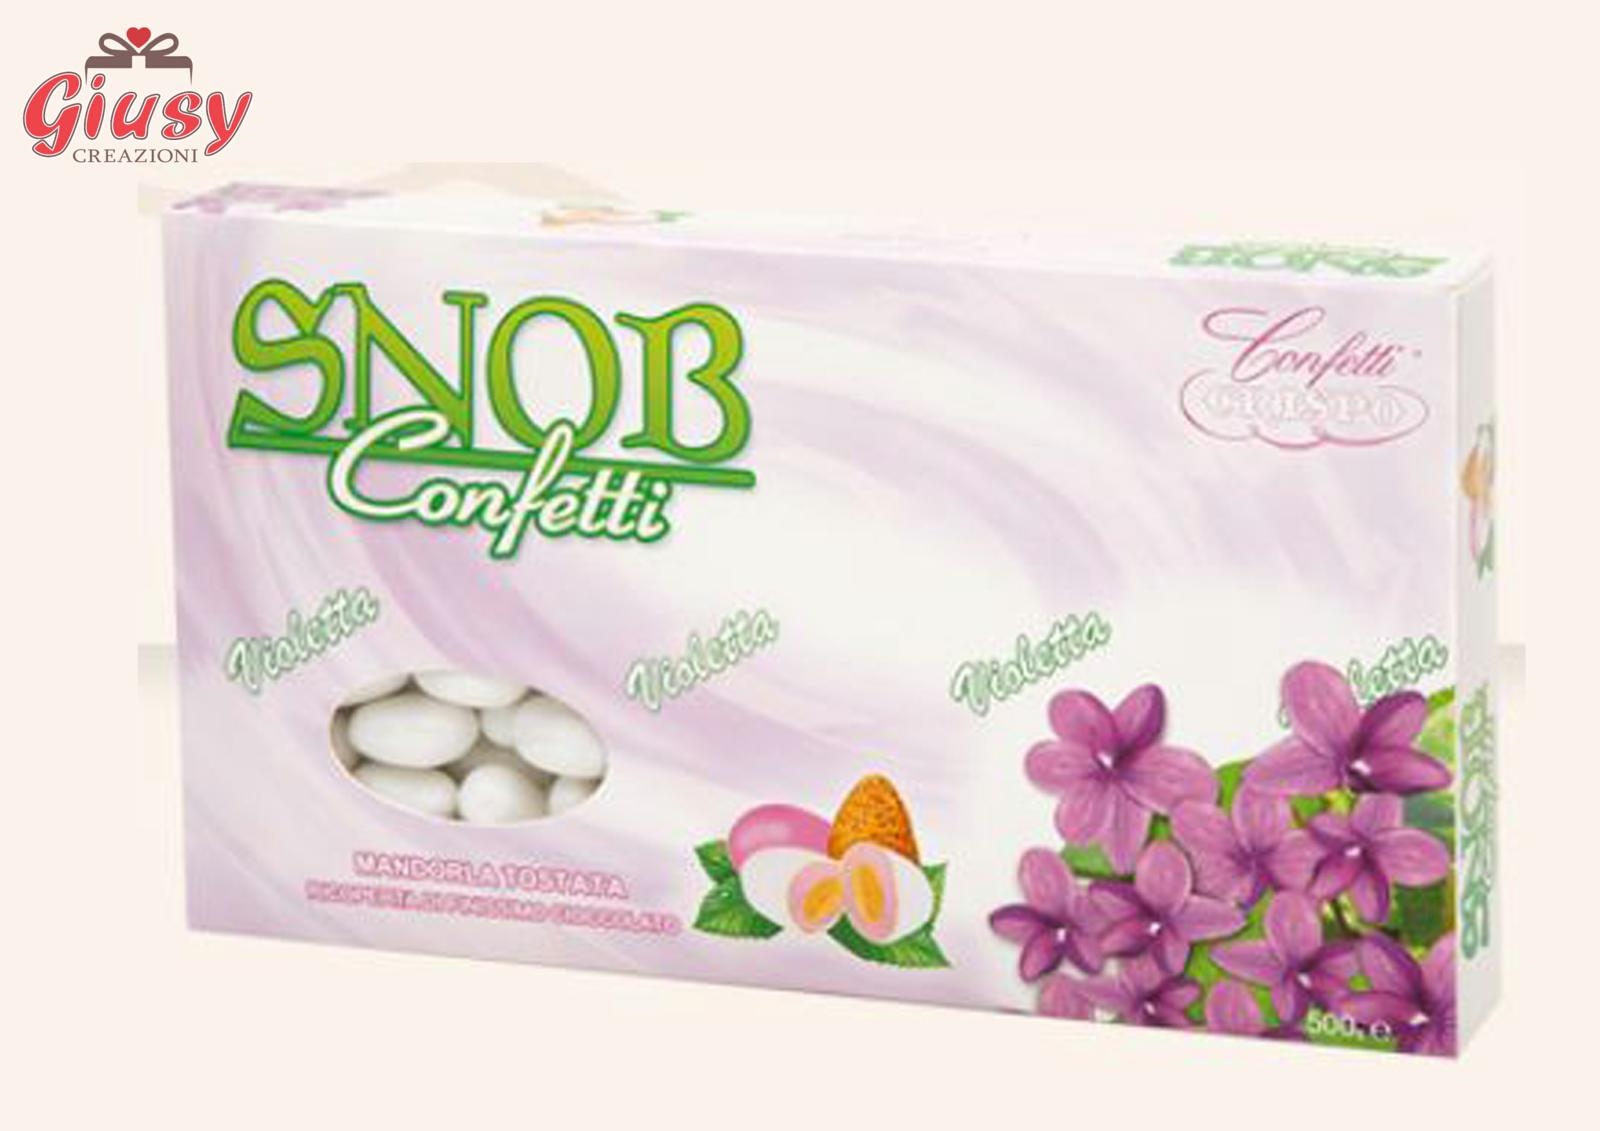 Confetti Snob Gusto Violetta Confezione 500g